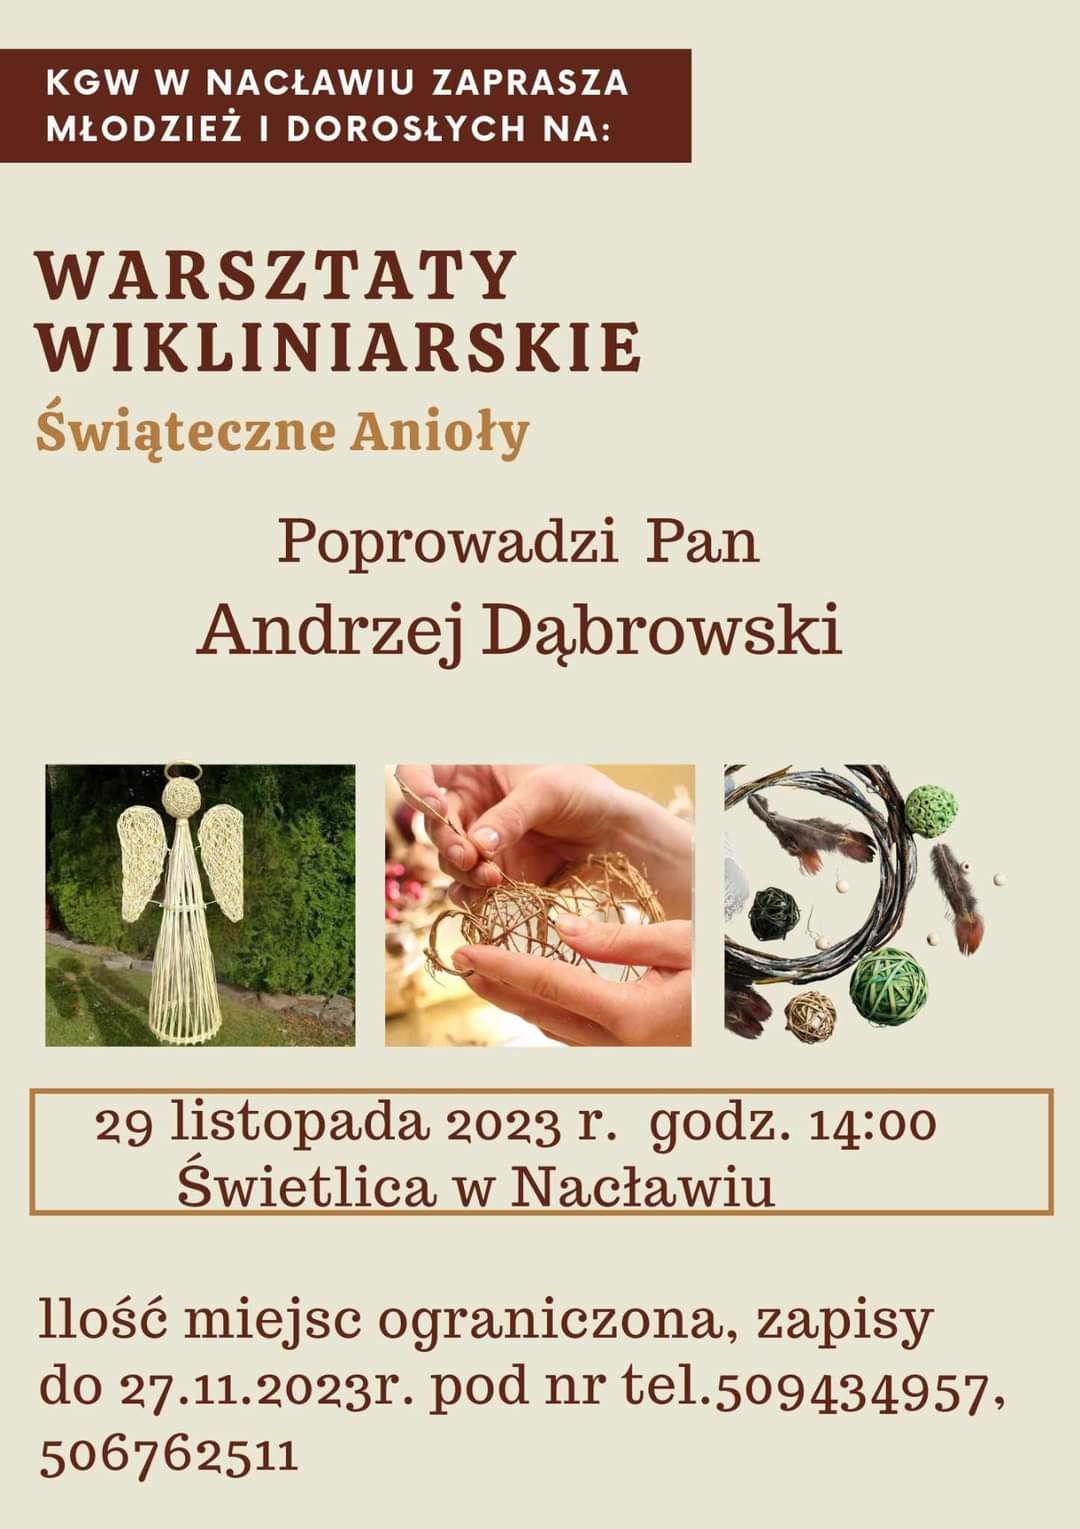 Plakat z zaproszeniem na warsztaty wikliniarskie świąteczne anioły 29 listopada 2023 w Nacławiu